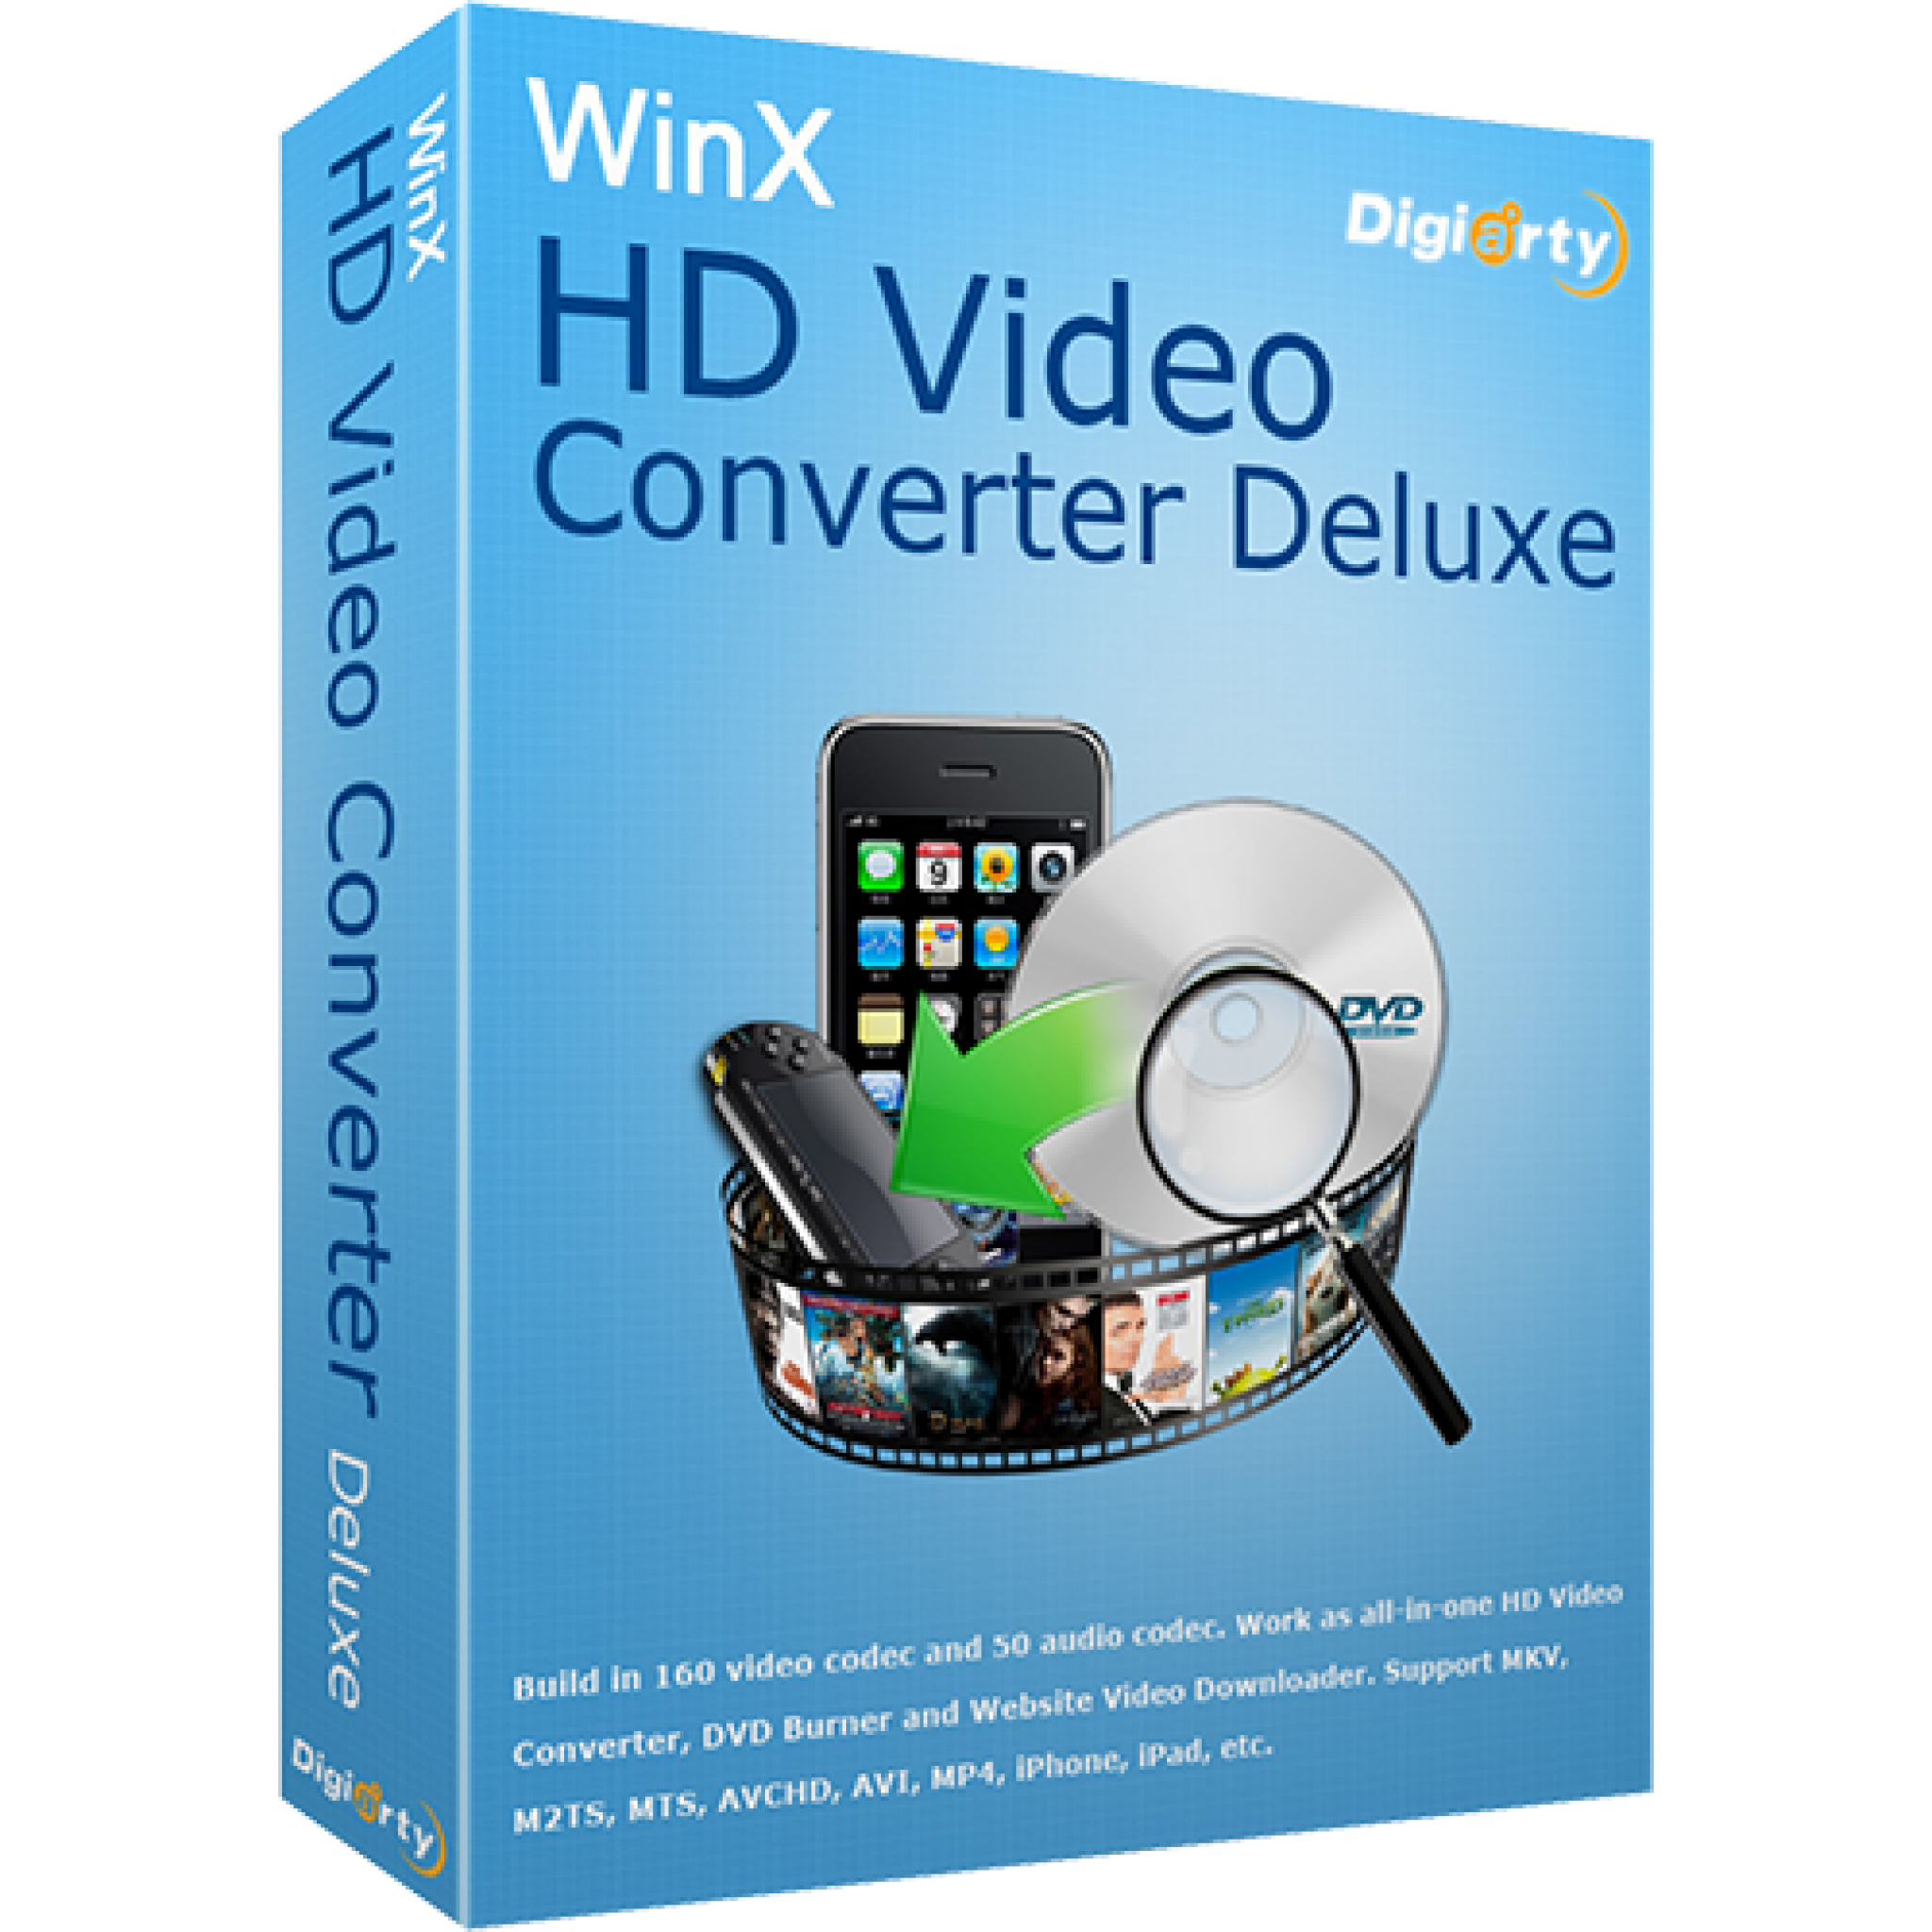 winx hd video converter deluxe mac torrent download